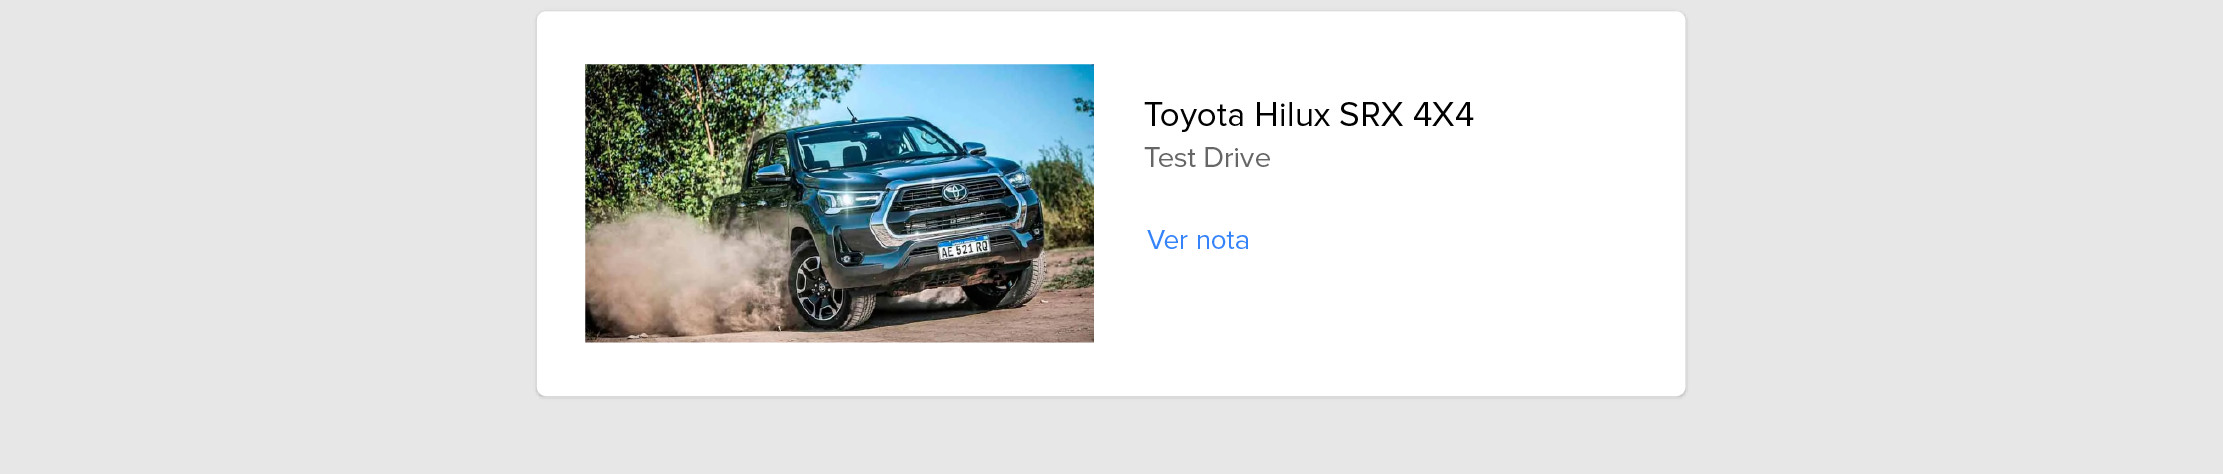 Toyota Hilux test drive